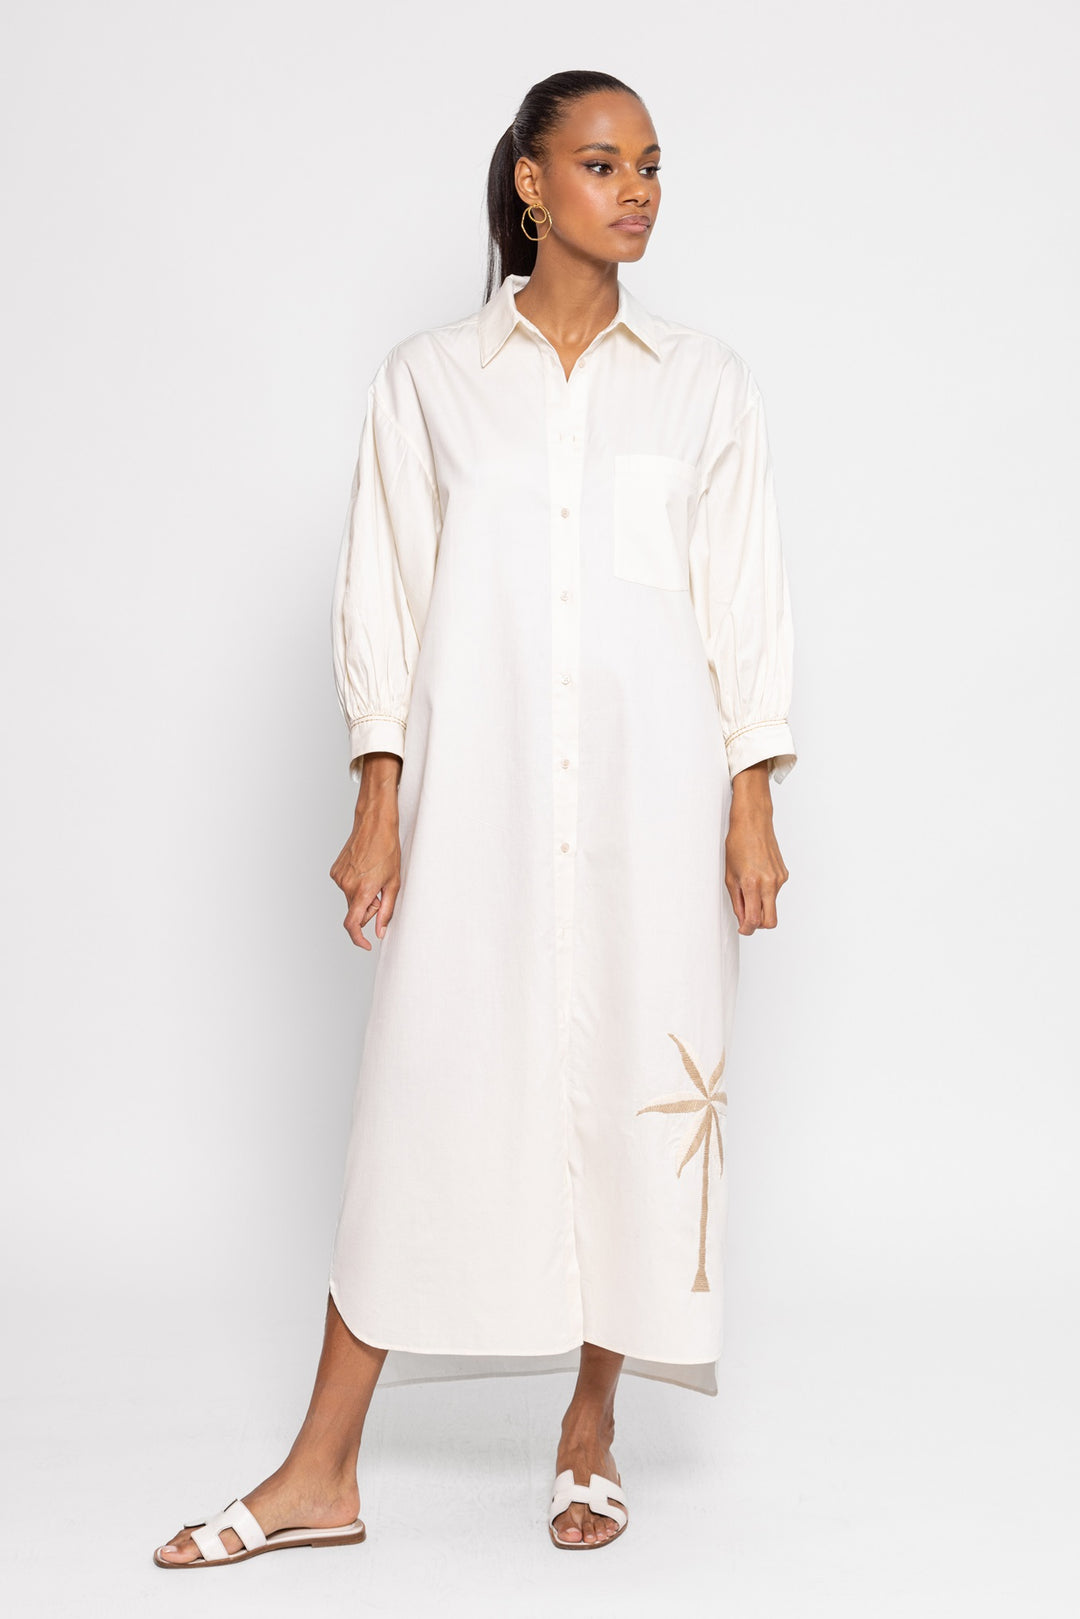 Sundress Regina Long Dress - White - Capri by Sunset & Co.